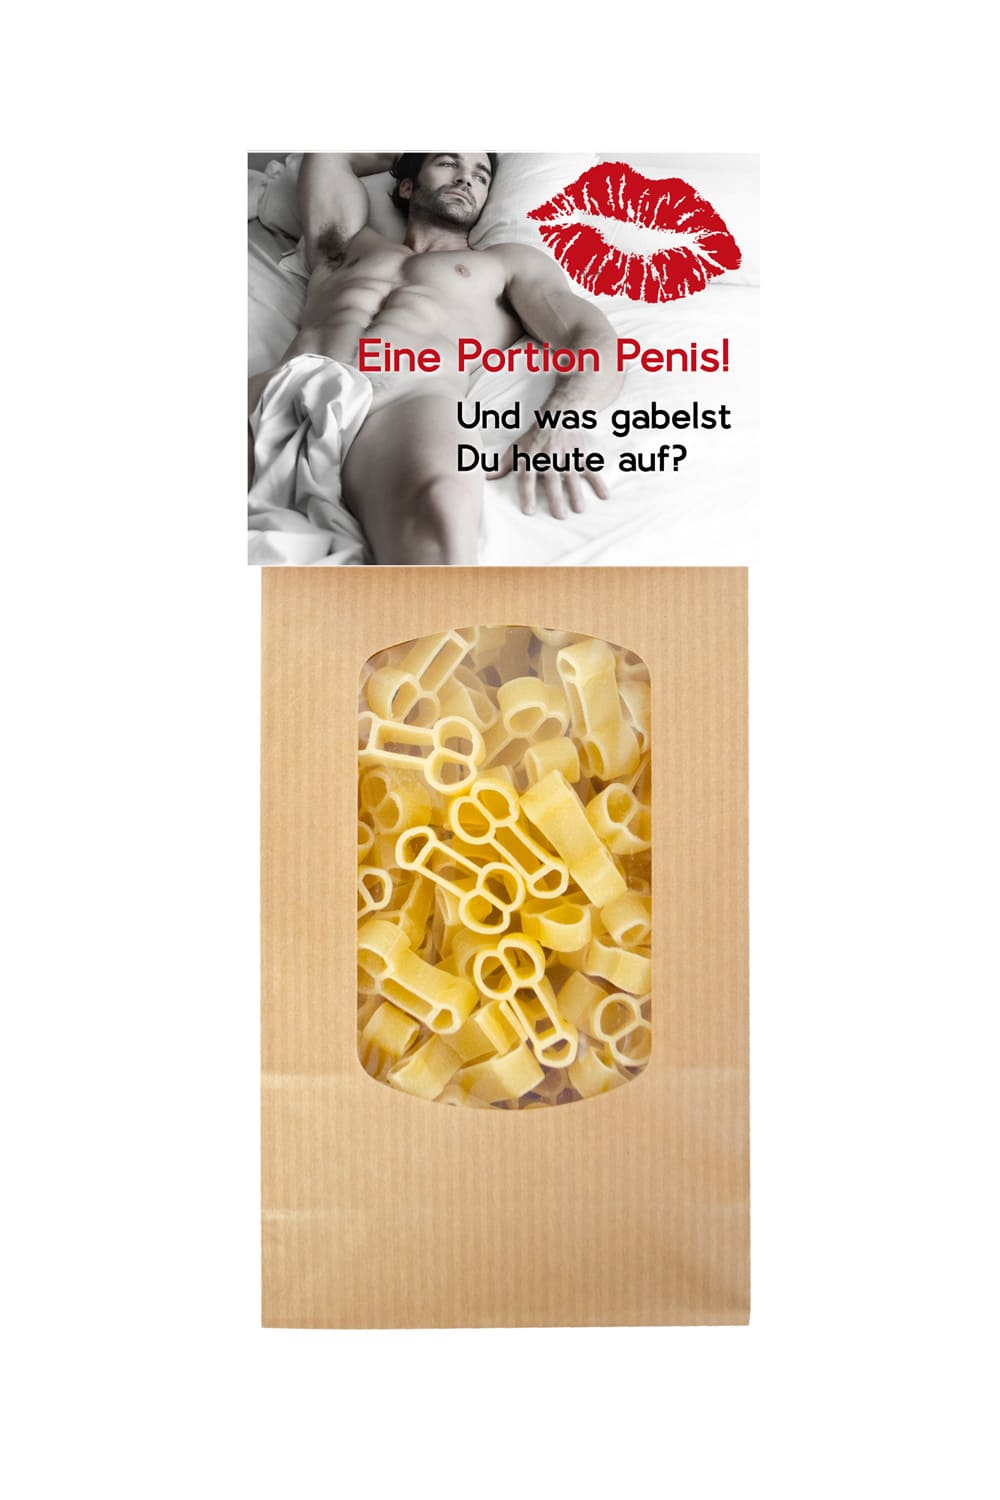 Diese lustigen Pasta sind in Penisform. Auf der Verpackung steht der witzige Spruch: Eine Portion Penis Pasta! Und was gabelst Du heute auf? Diese Penis Teigwaren sind einfach der Brueller. Ein grossartiges Geschenk fuer Alle, die Humor lieben. 